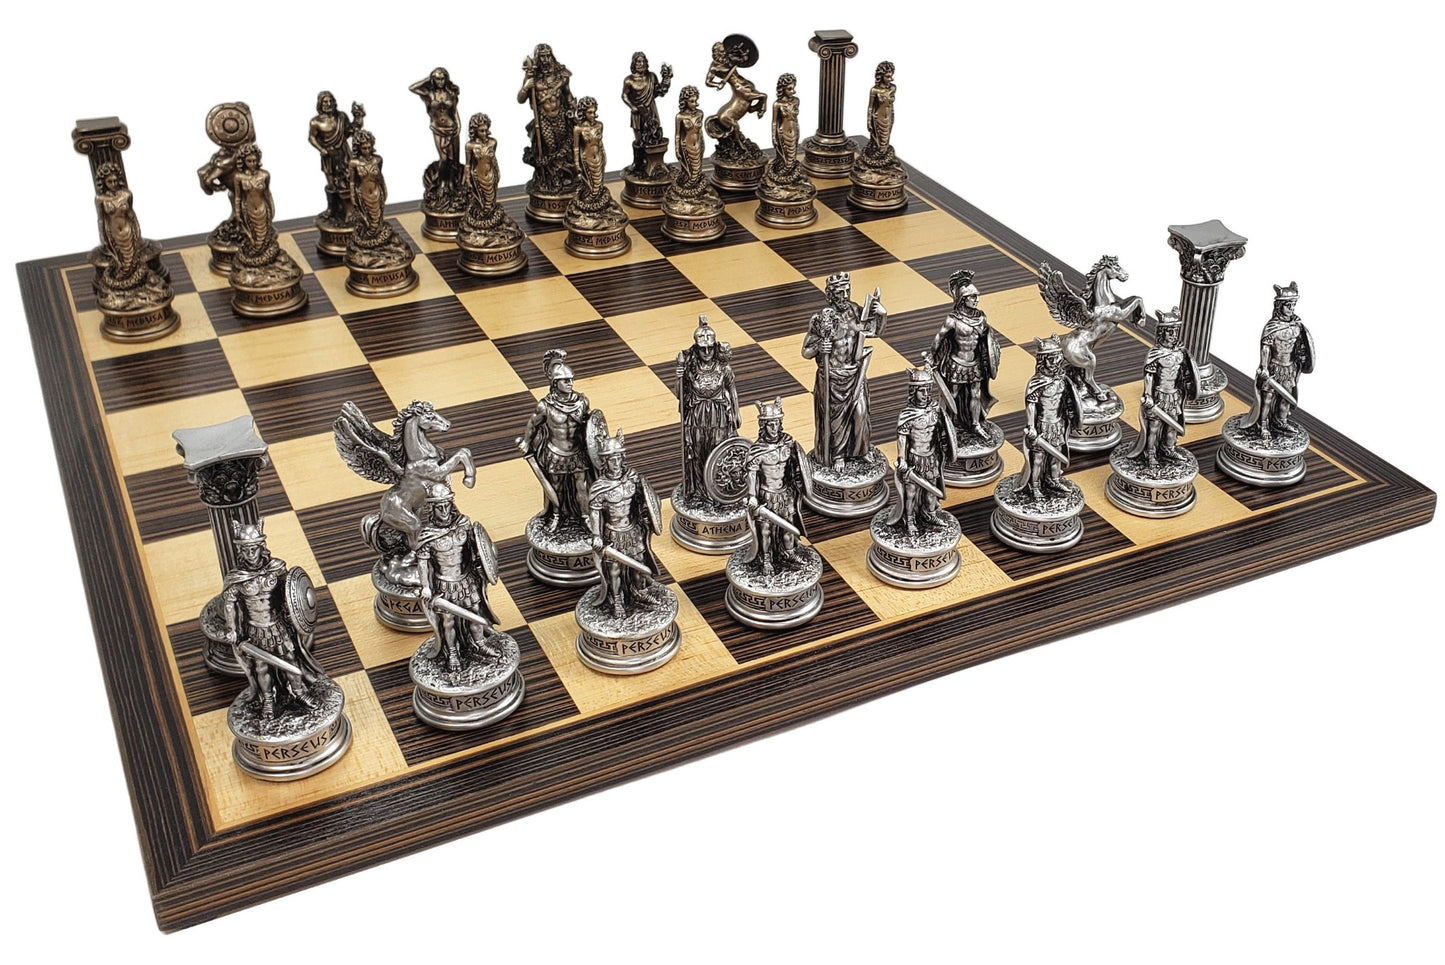 Greek Mythology Olympus Gods Chess Set Pewter Bronze Color W/ 17" Ebony Board